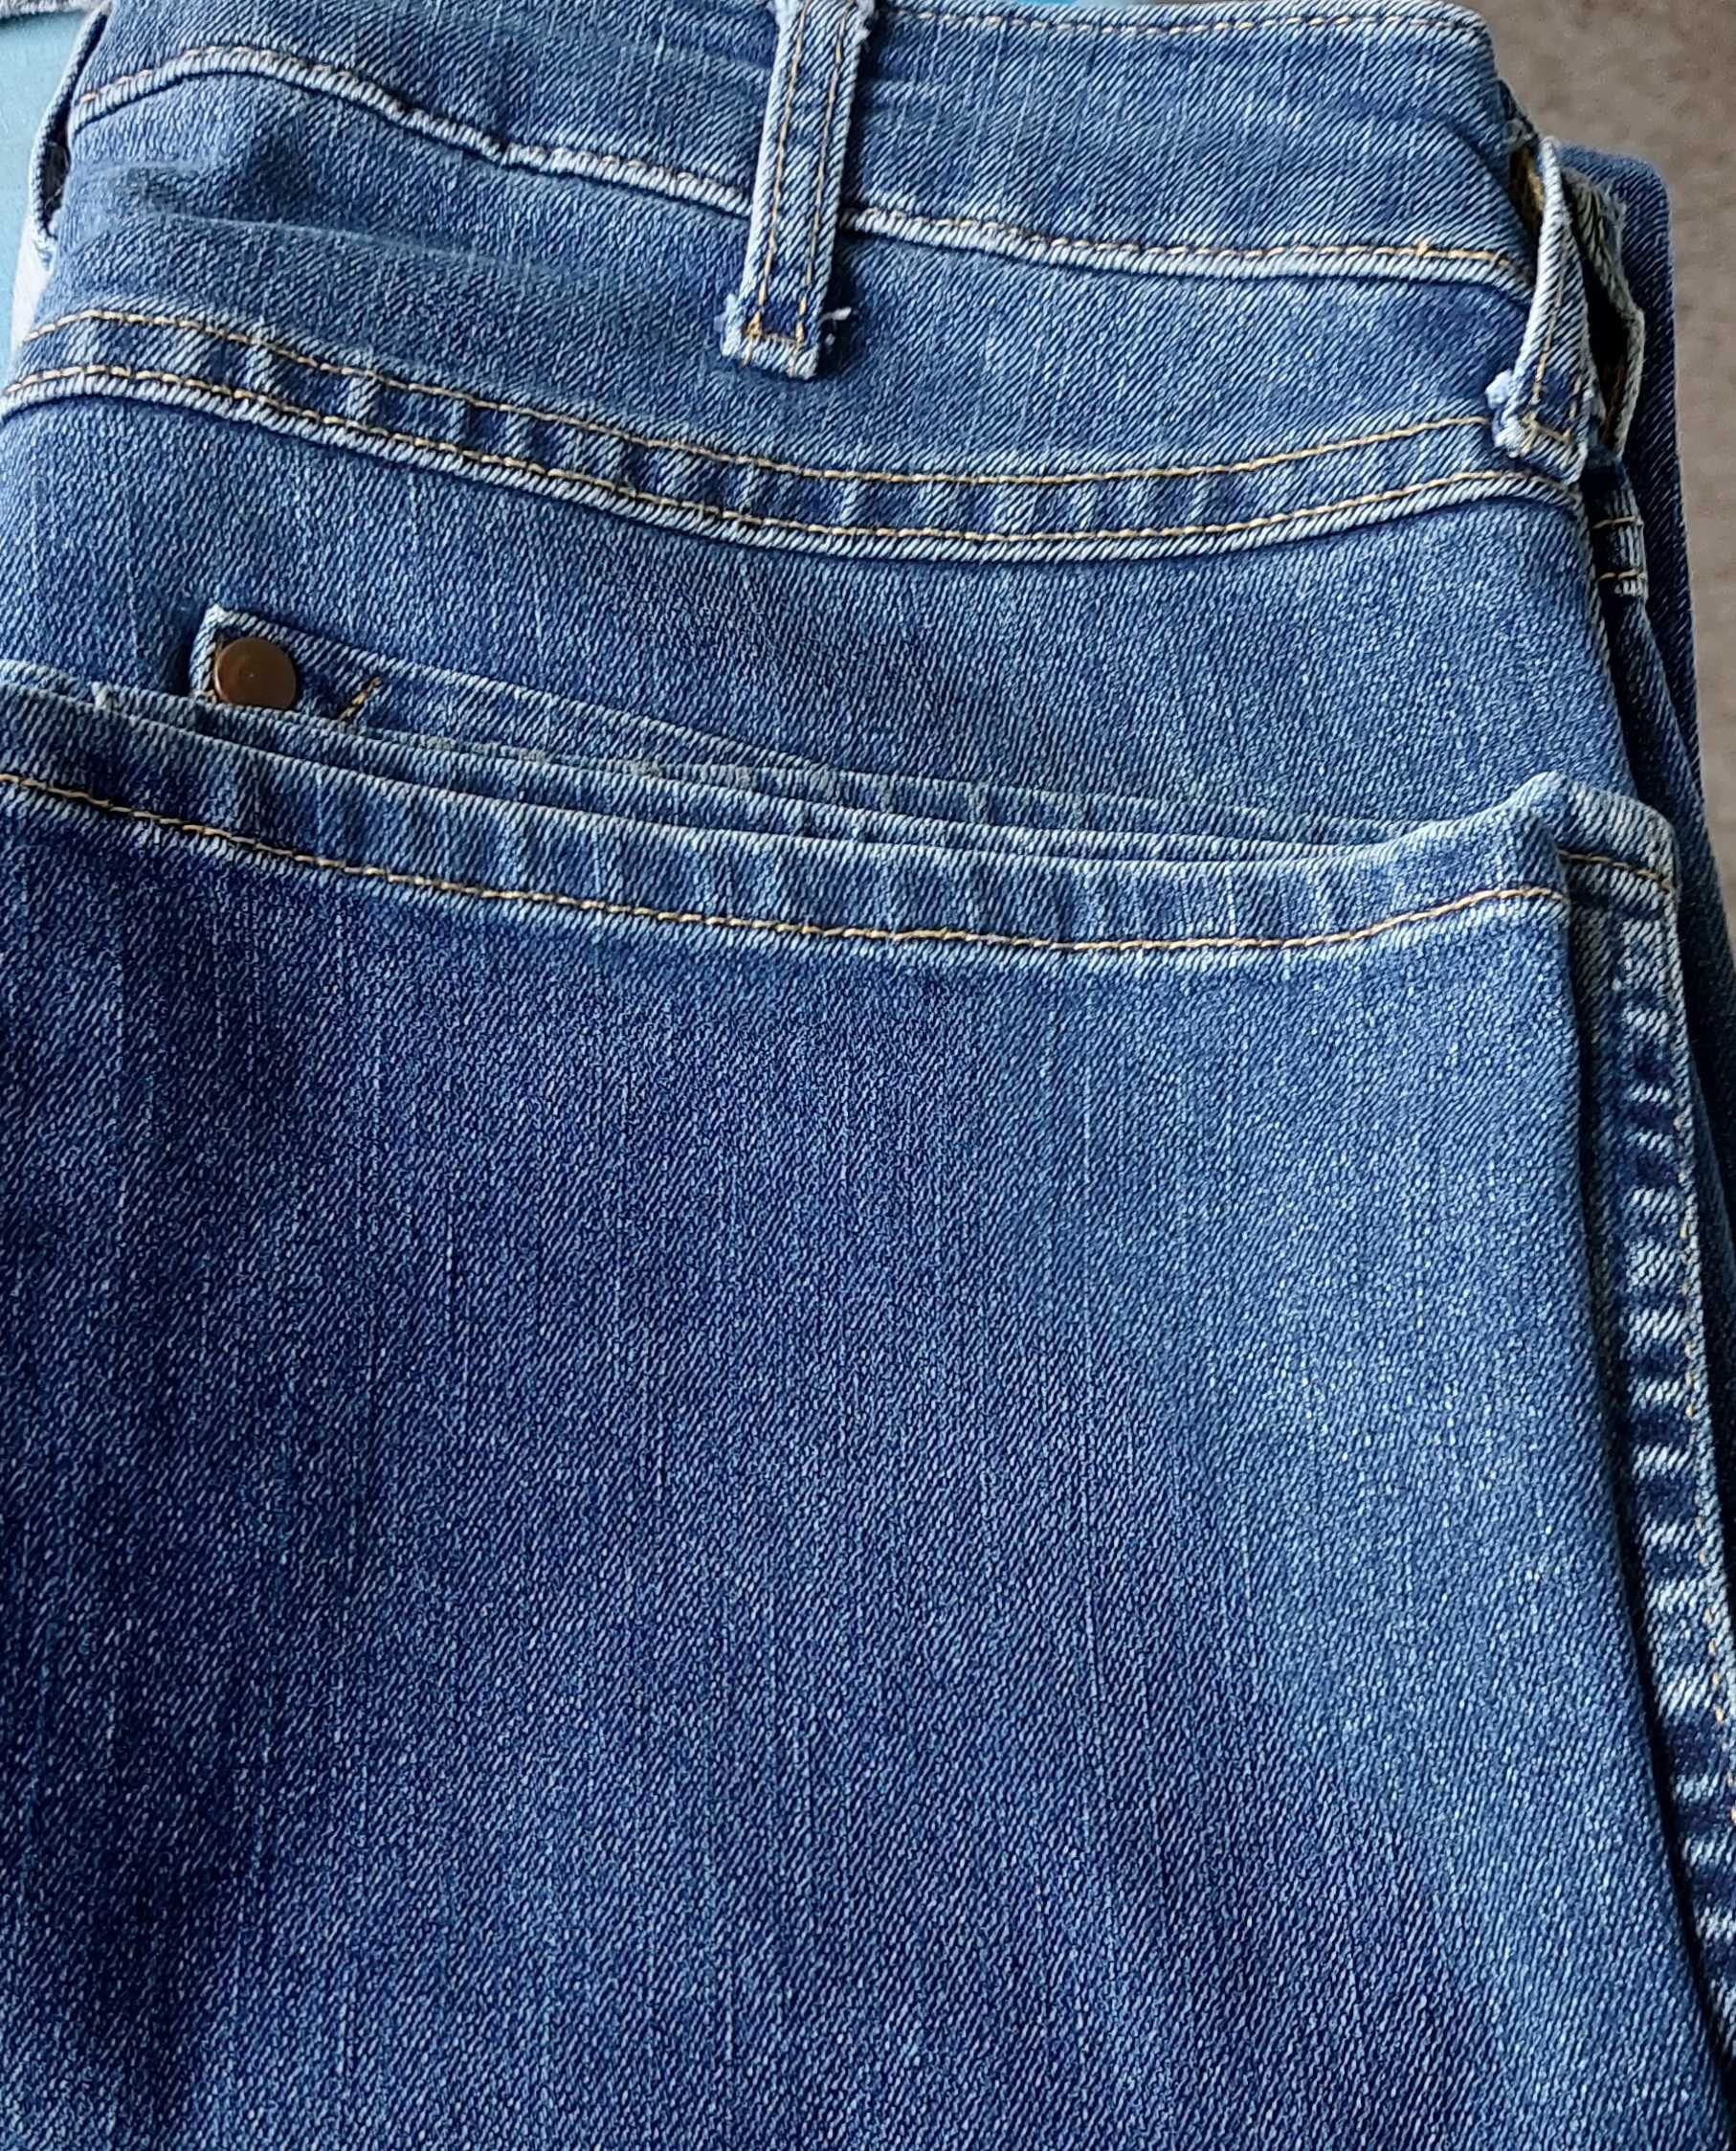 Spodnie jeansy Wrangler długie 36 W28 L32